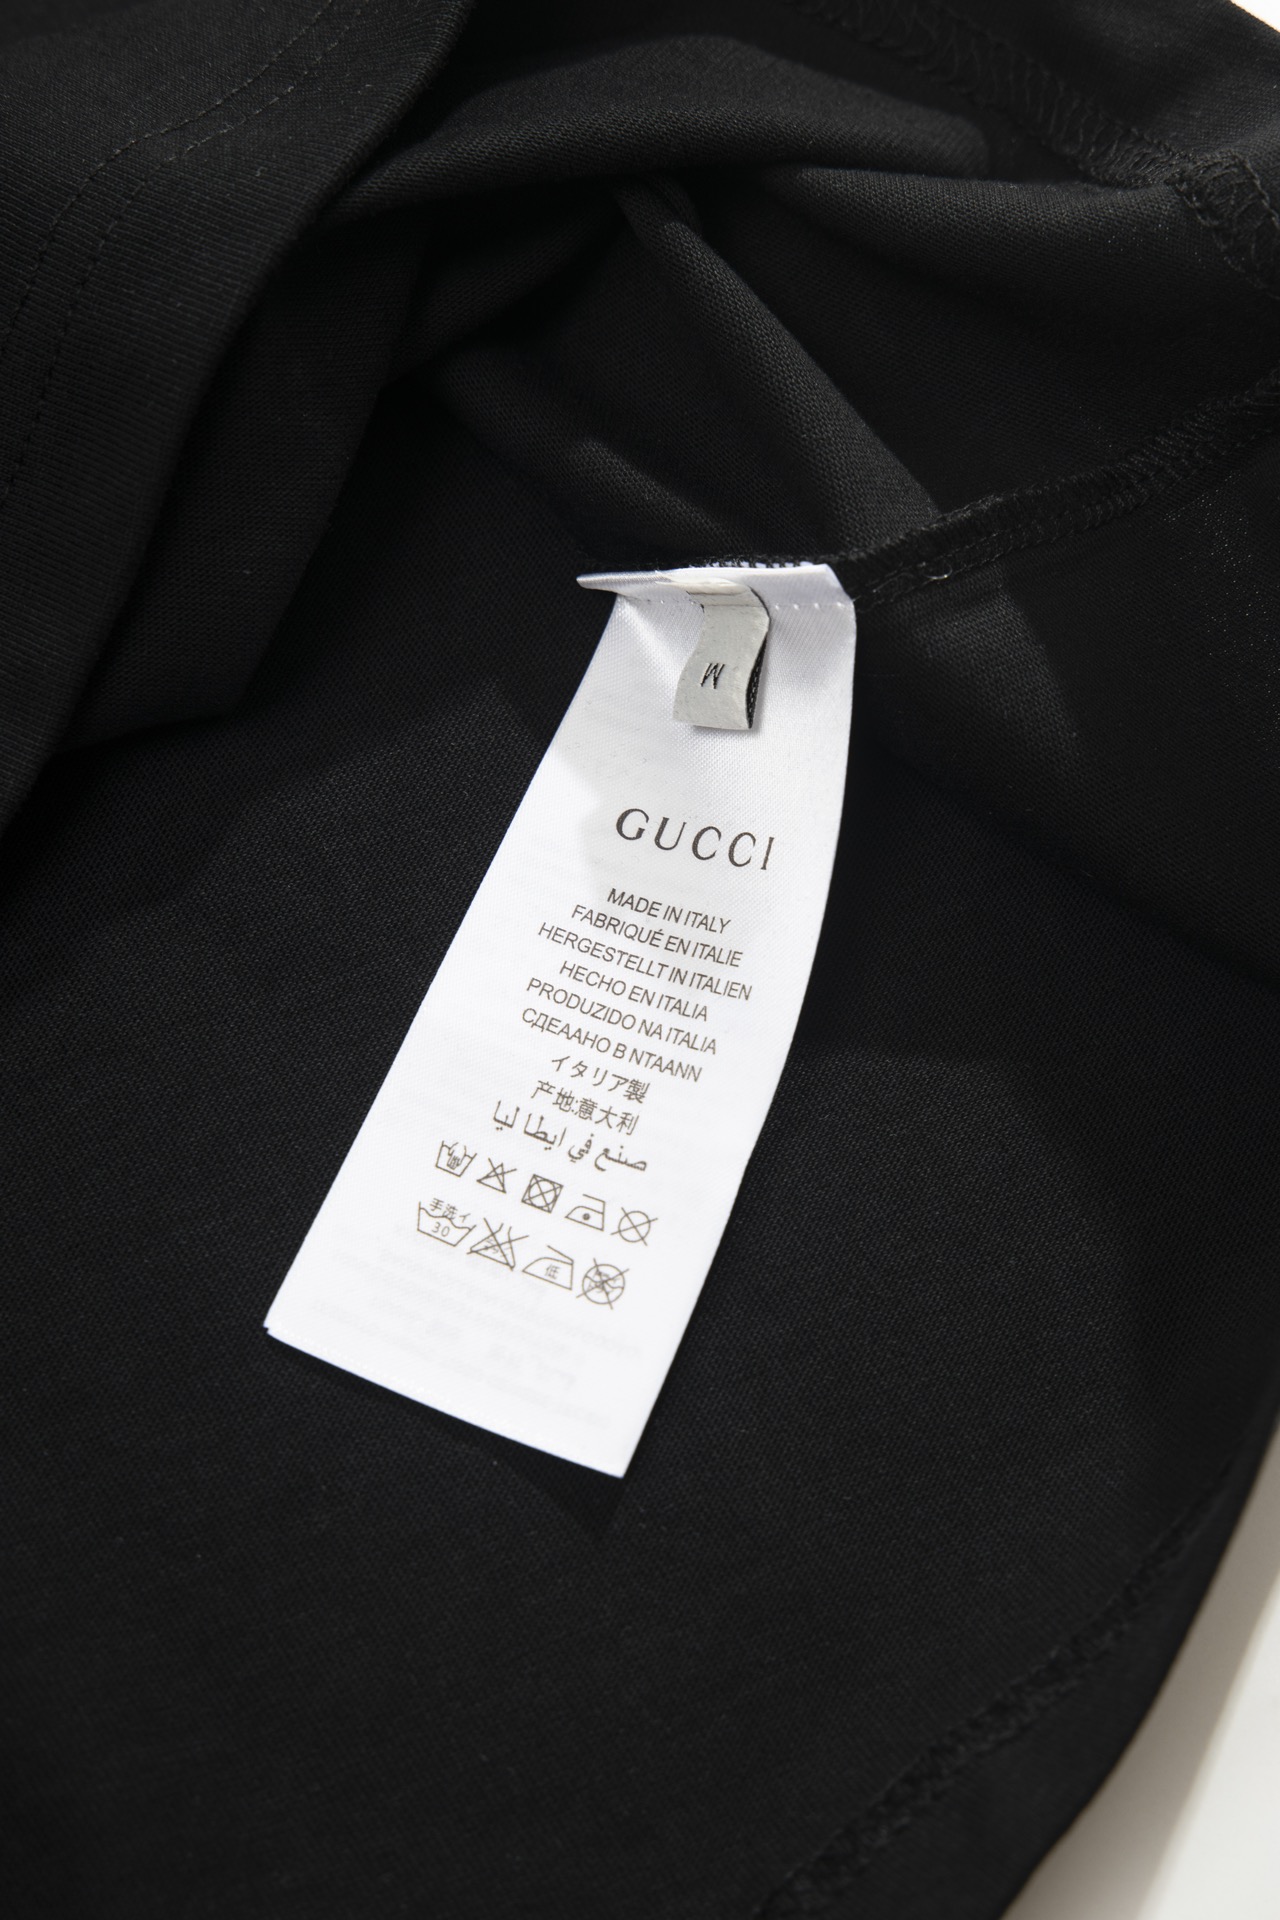 S56Gucci古驰金典款Gucci标识印花短袖标识精致升级灵感源自八十年代复古印花原版面料官方同款定制